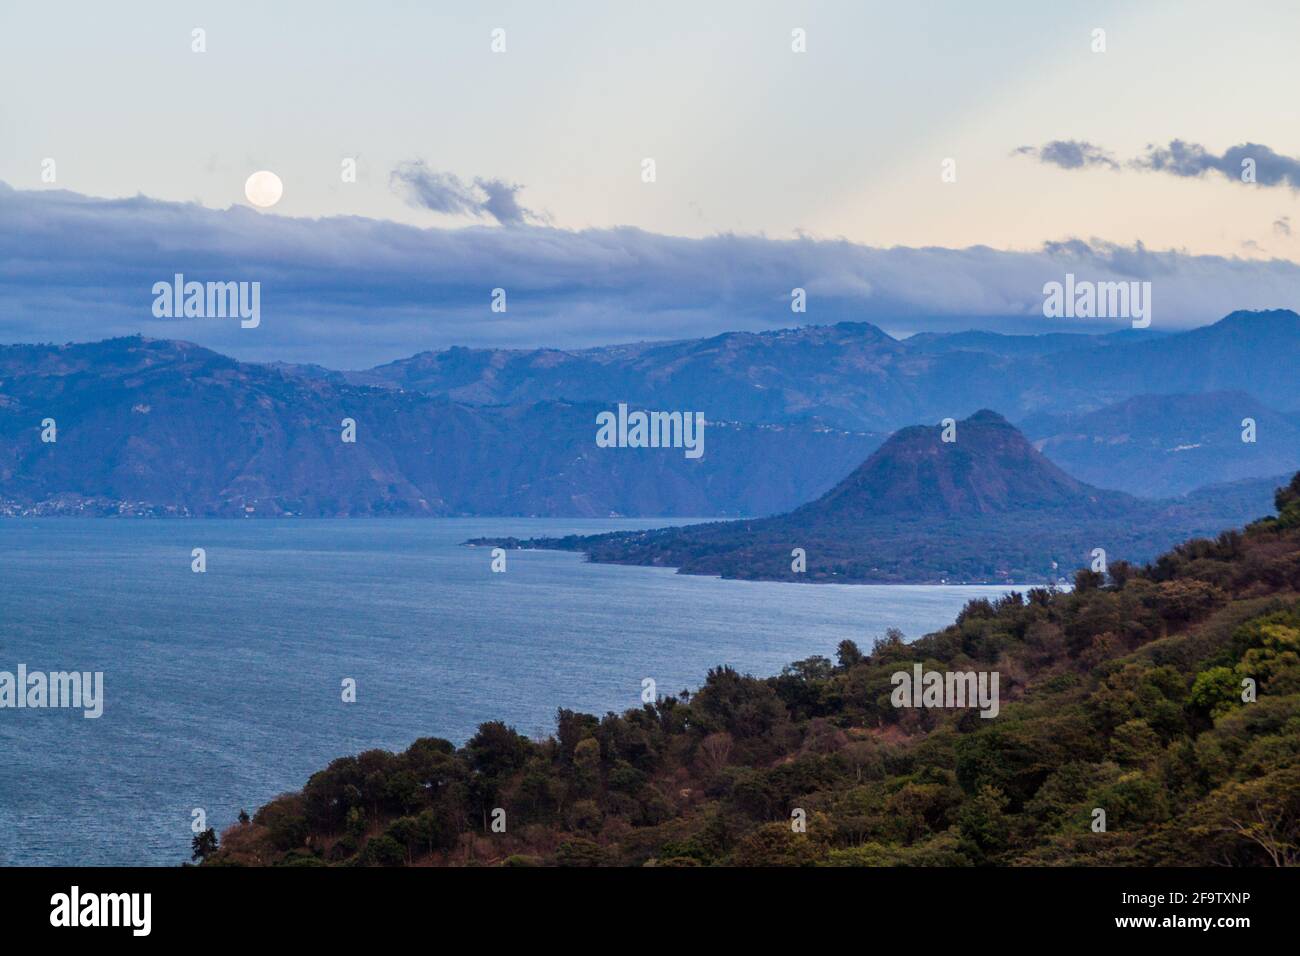 View of Atitlan lake and Cerro de Oro volcano, Guatemala Stock Photo